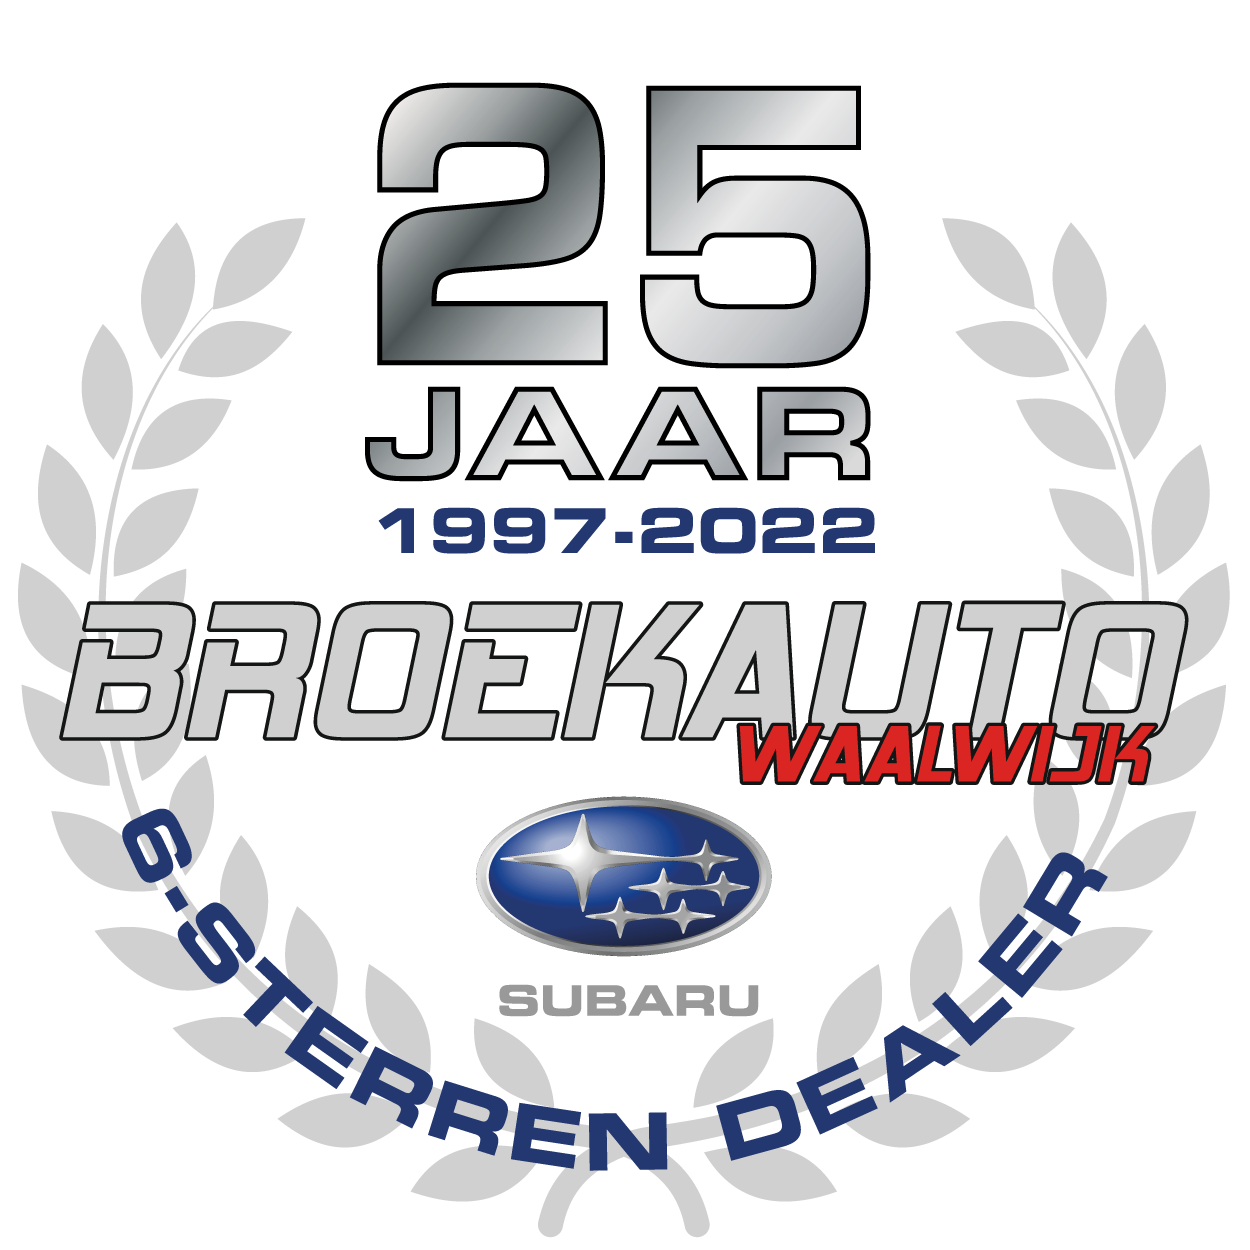 Broekauto 25 jaar Subaru 6-sterren-dealer